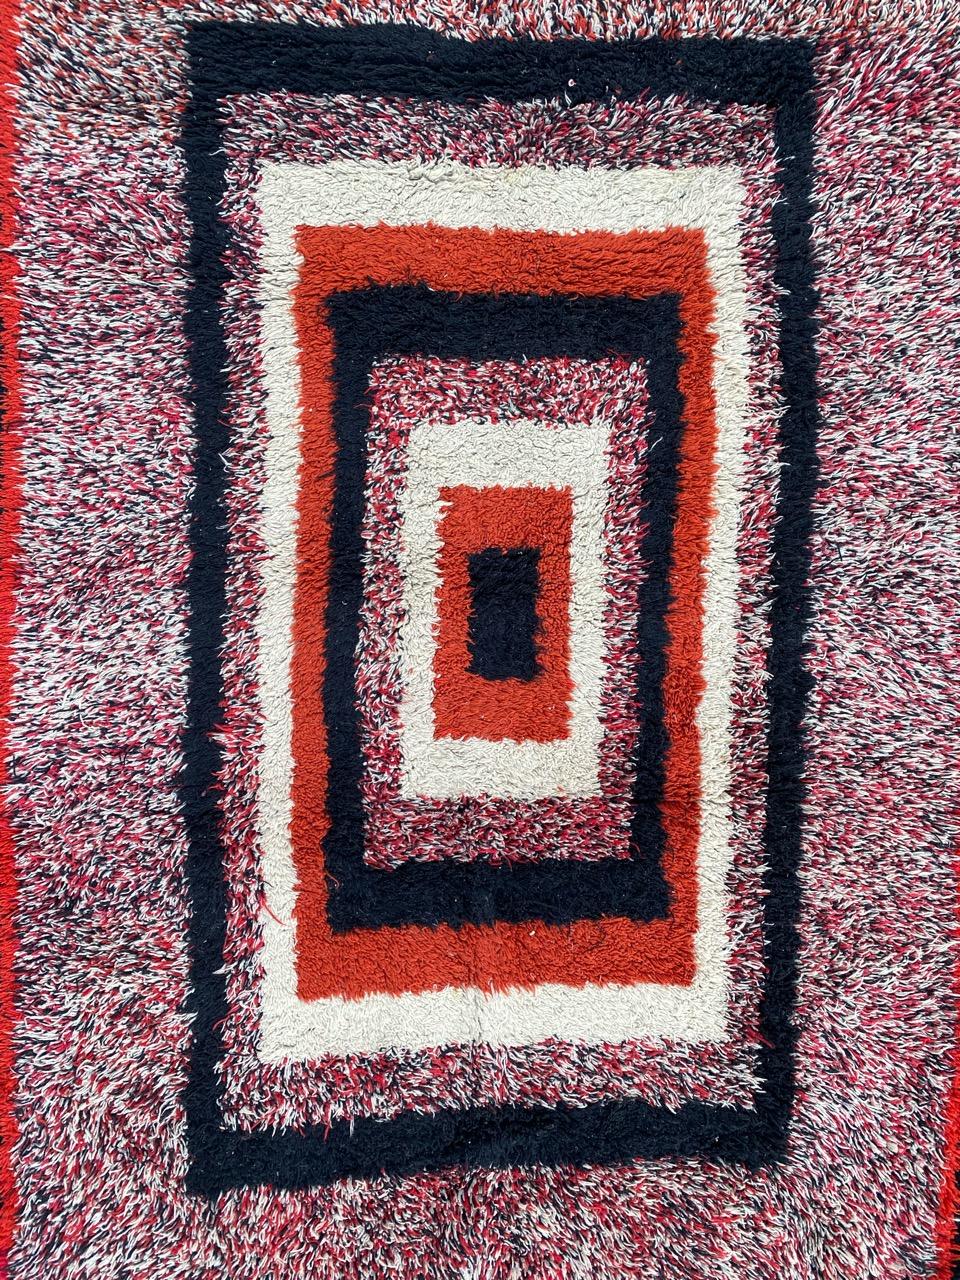 Schöner handgeknüpfter Cogolin-Teppich mit geometrischem Art-Déco-Muster und schönen Farben, komplett handgeknüpft mit Wollsamt auf Baumwollgrund.

✨✨✨
